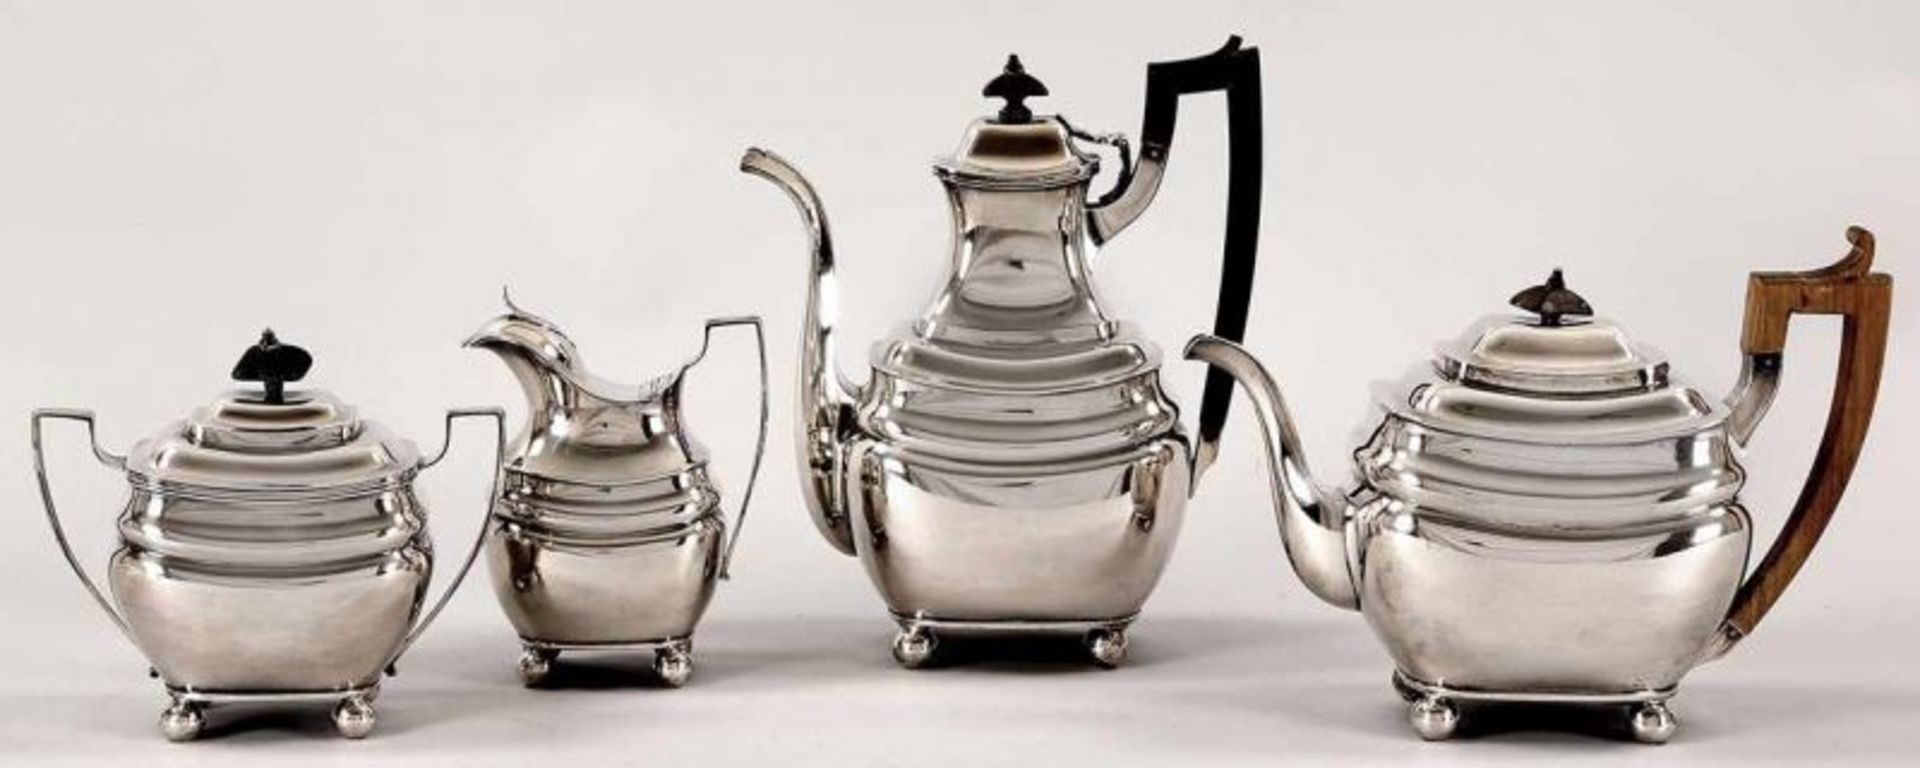 Gr. Kaffee-Tee-Set Silber/Holz, Lissabon, um 1800 Auf 4 Kugelfüßen die gebauchte Wandung m.